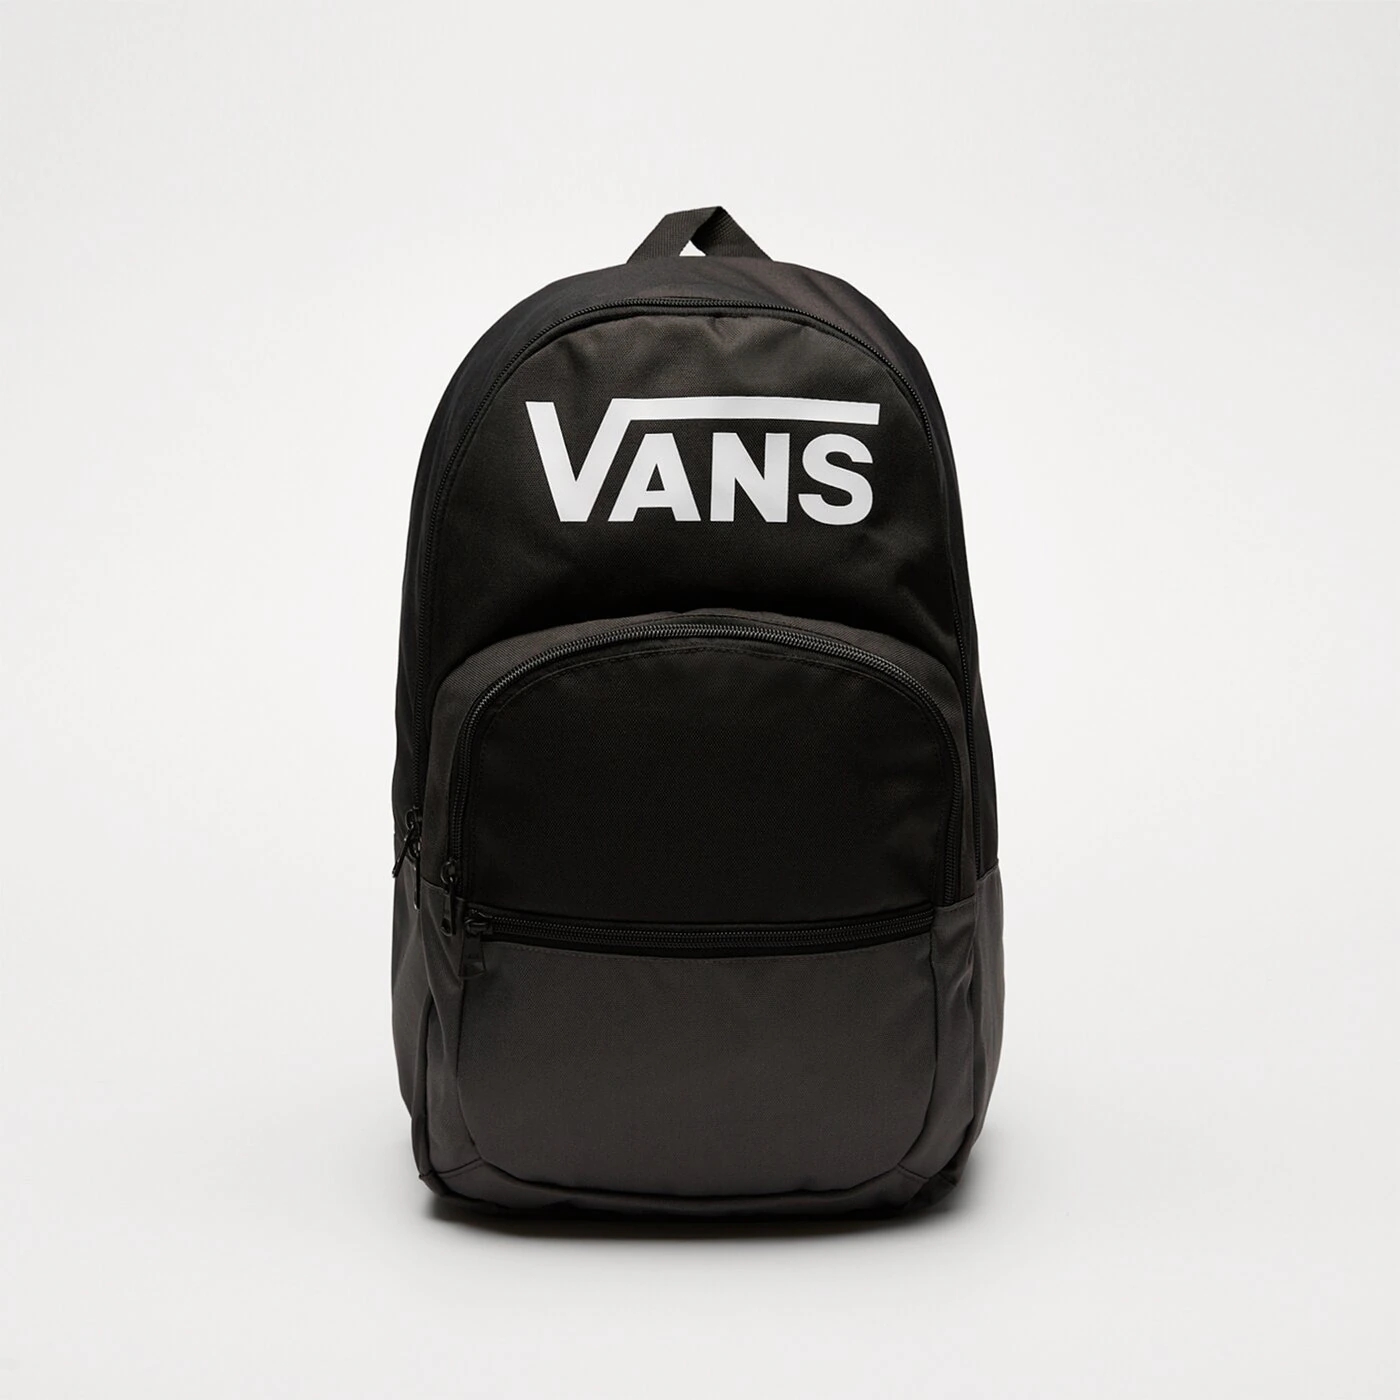 Рюкзак Vans с логотипом, черный цена и фото